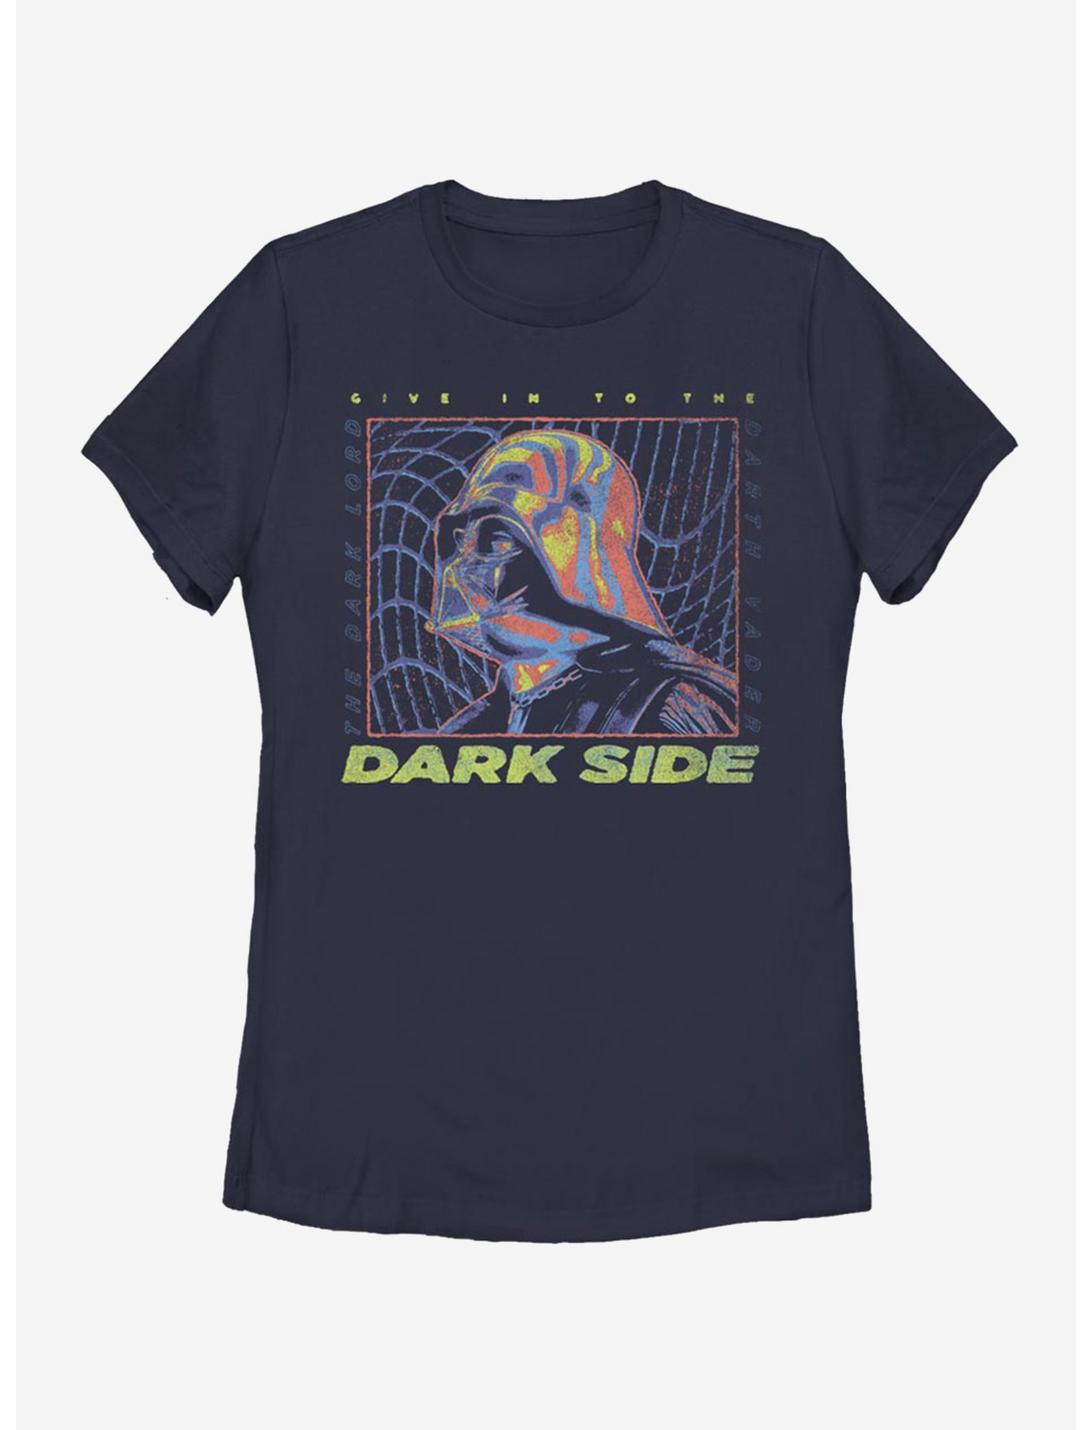 Star Wars Vader Thermal Warp Womens T-Shirt, NAVY, hi-res